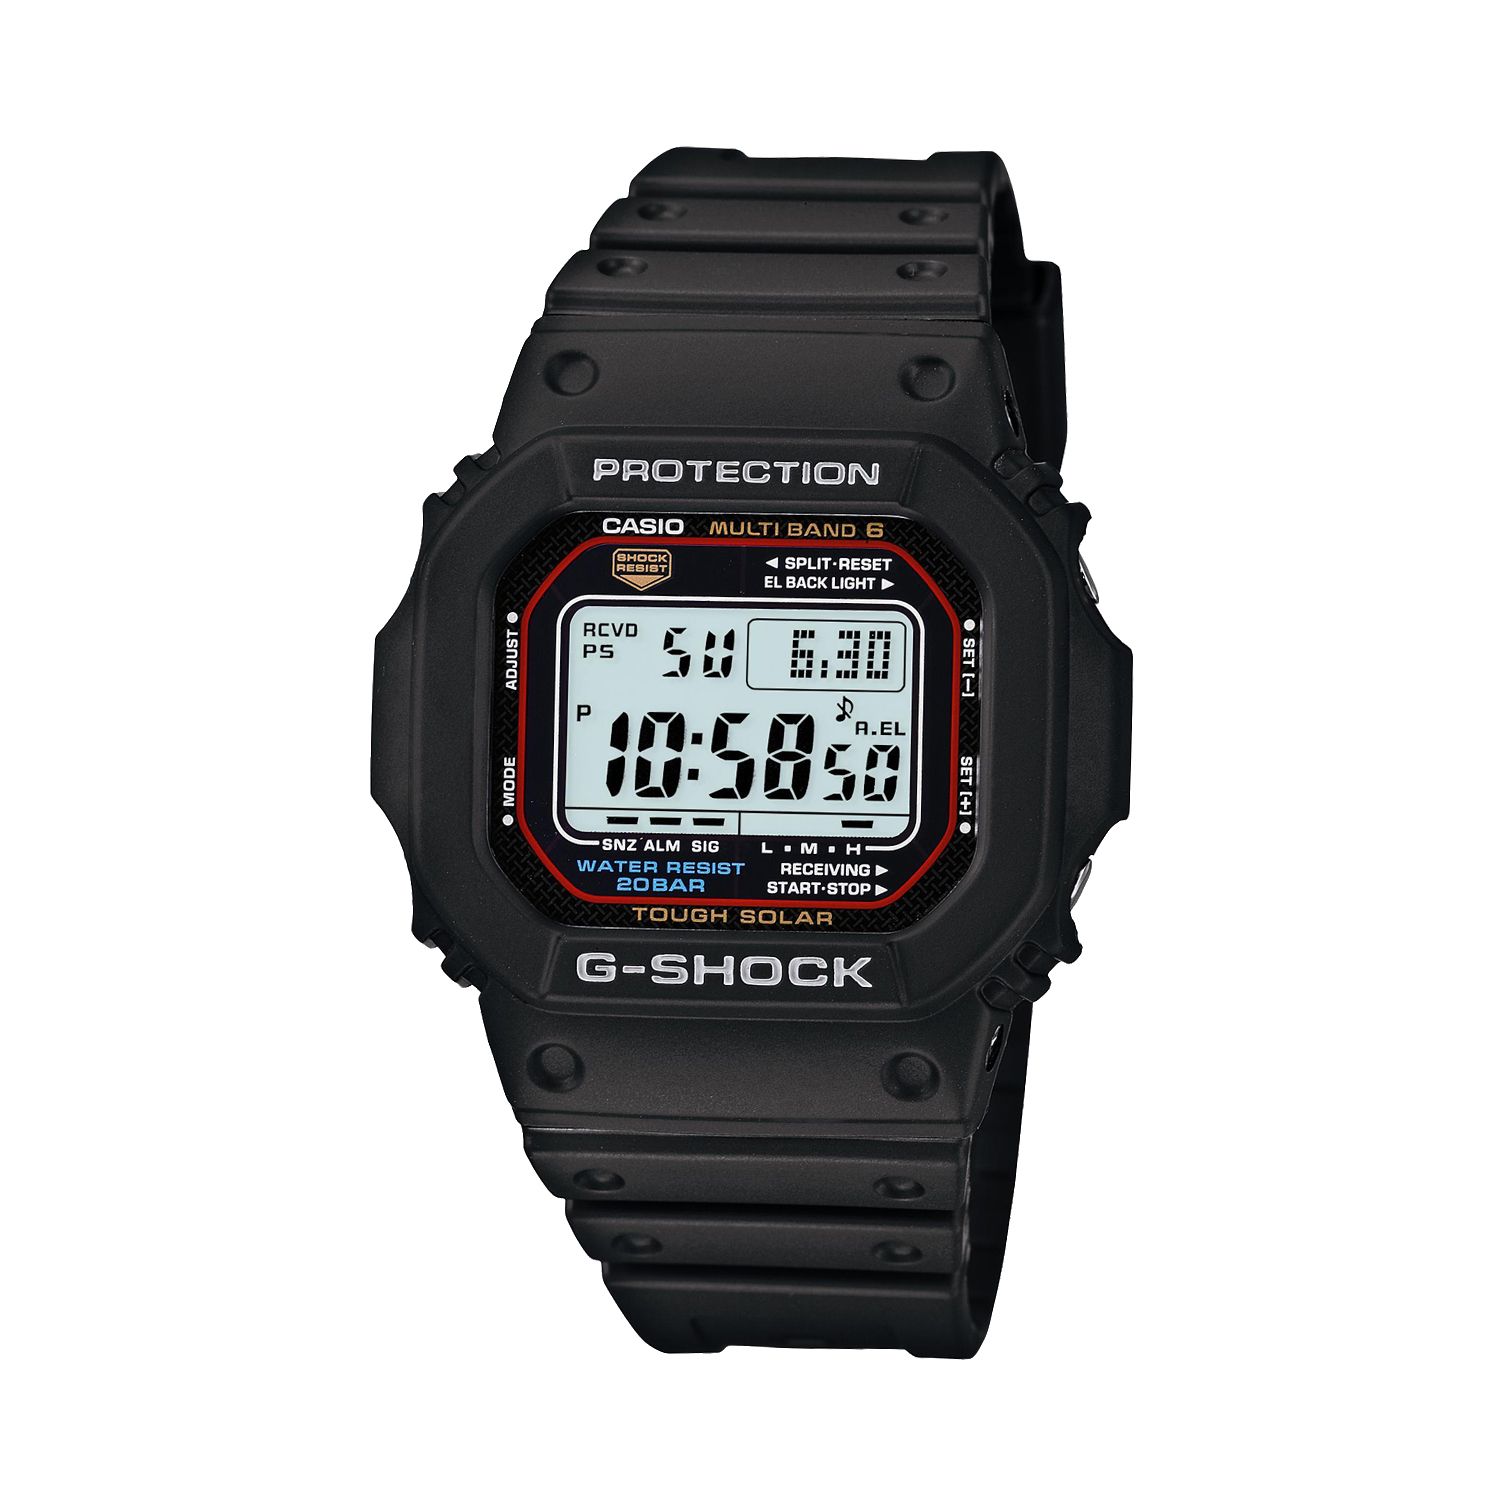 Мужские часы G-Shock Tough Solar с цифровым хронографом — GWM5610-1 Casio цена и фото